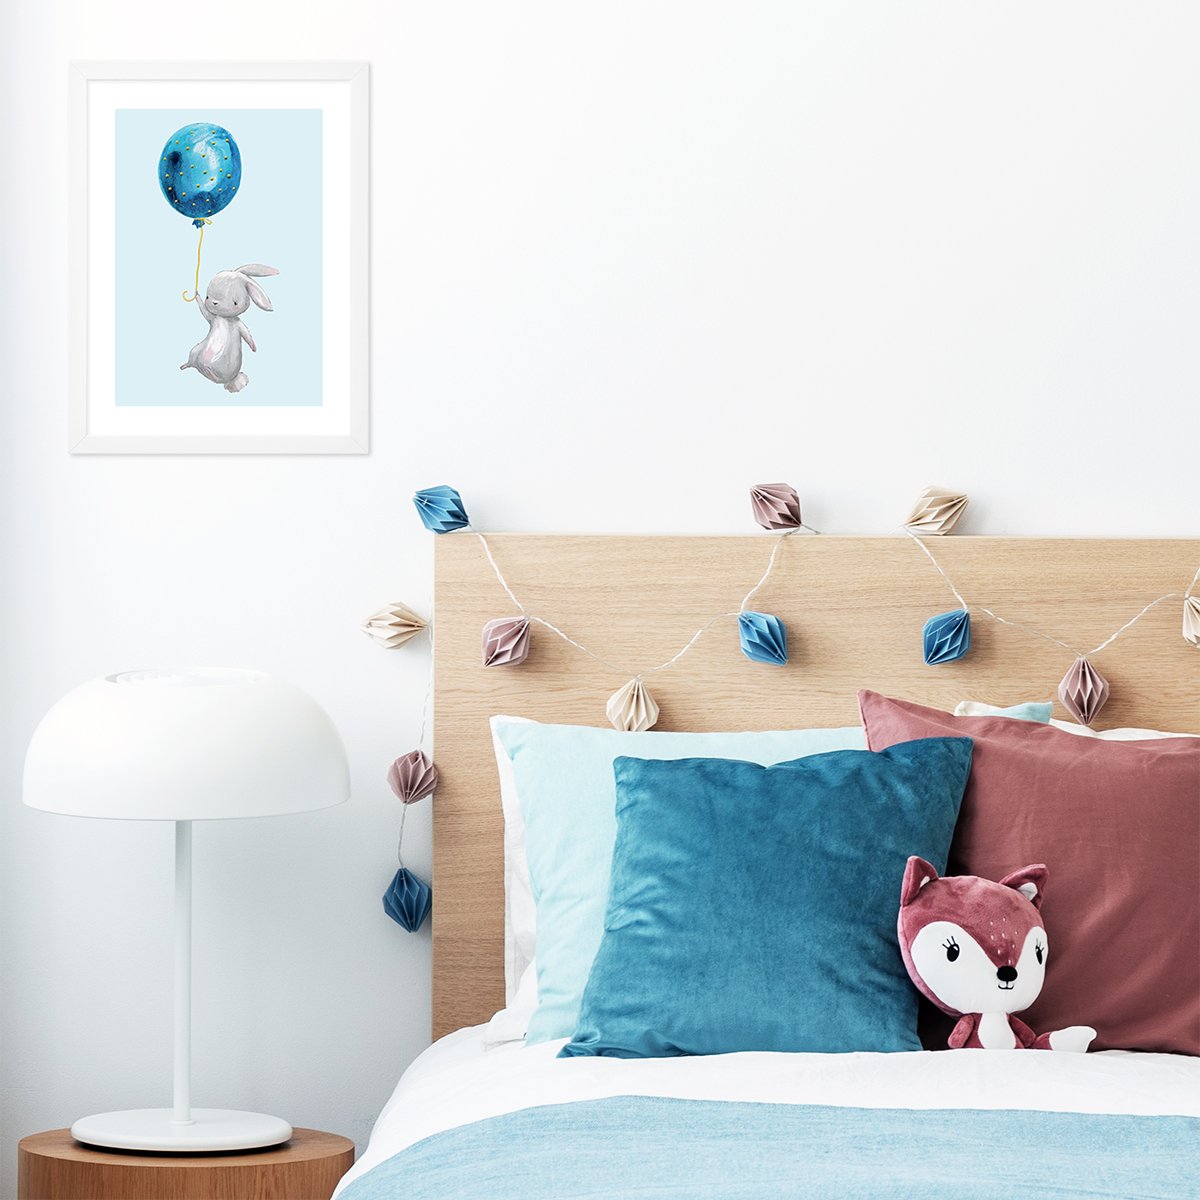 Plakaty z królikami i balonami w białych ramkach dla małych dzieci do powieszenia na ścianie przy łóżku#kolor_kolorowy